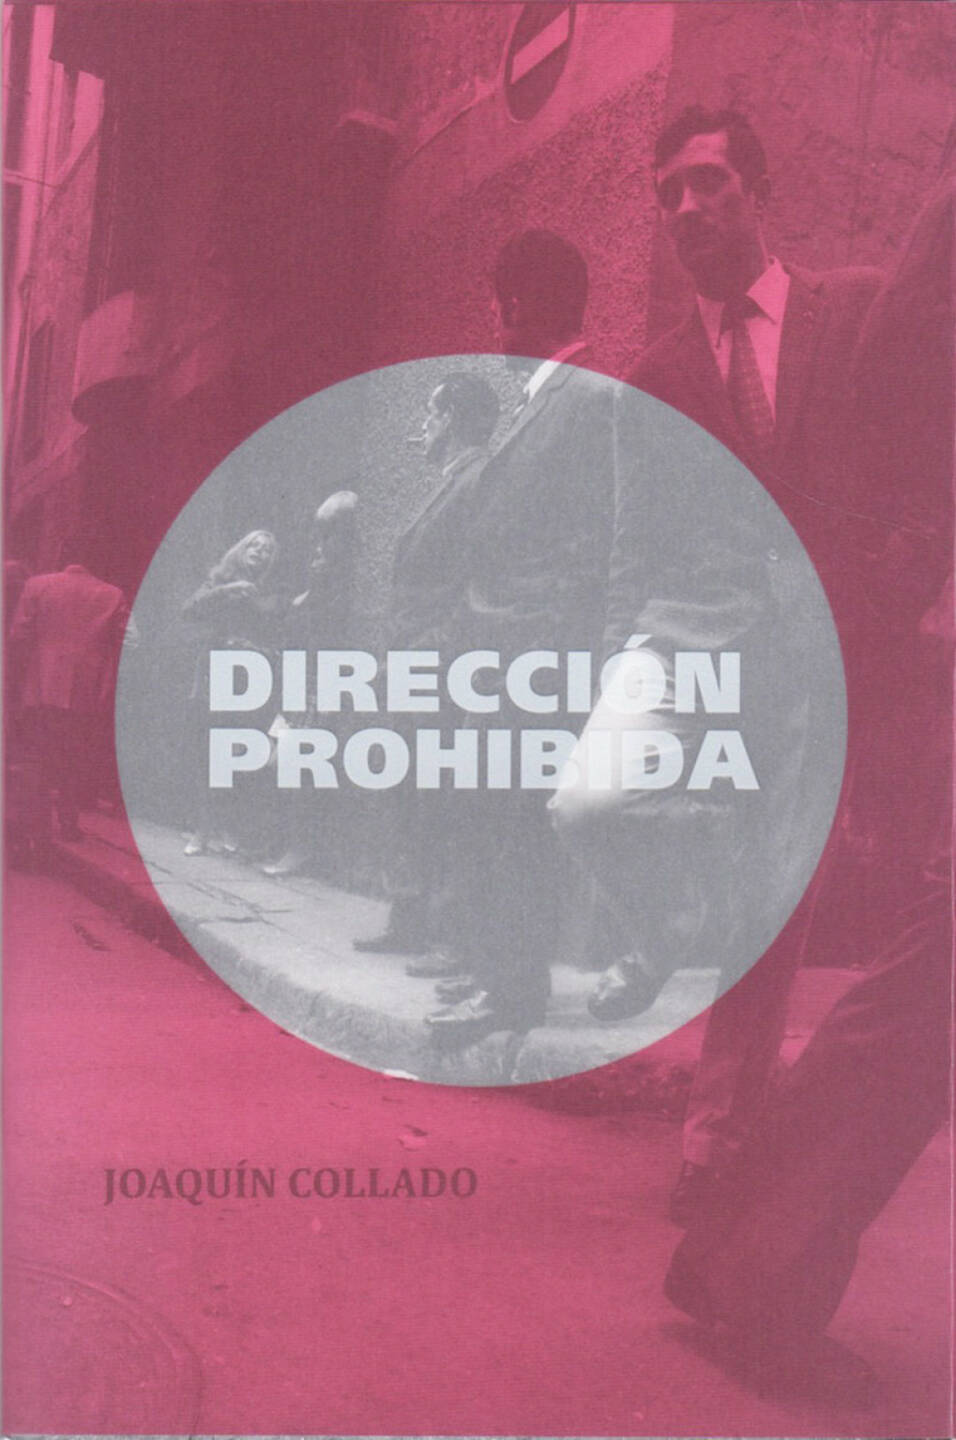 Joaquin Collado - Dirección Prohibida, Aman Iman Publishing 2015, Cover - http://josefchladek.com/book/joaquin_collado_-_direccion_prohibida